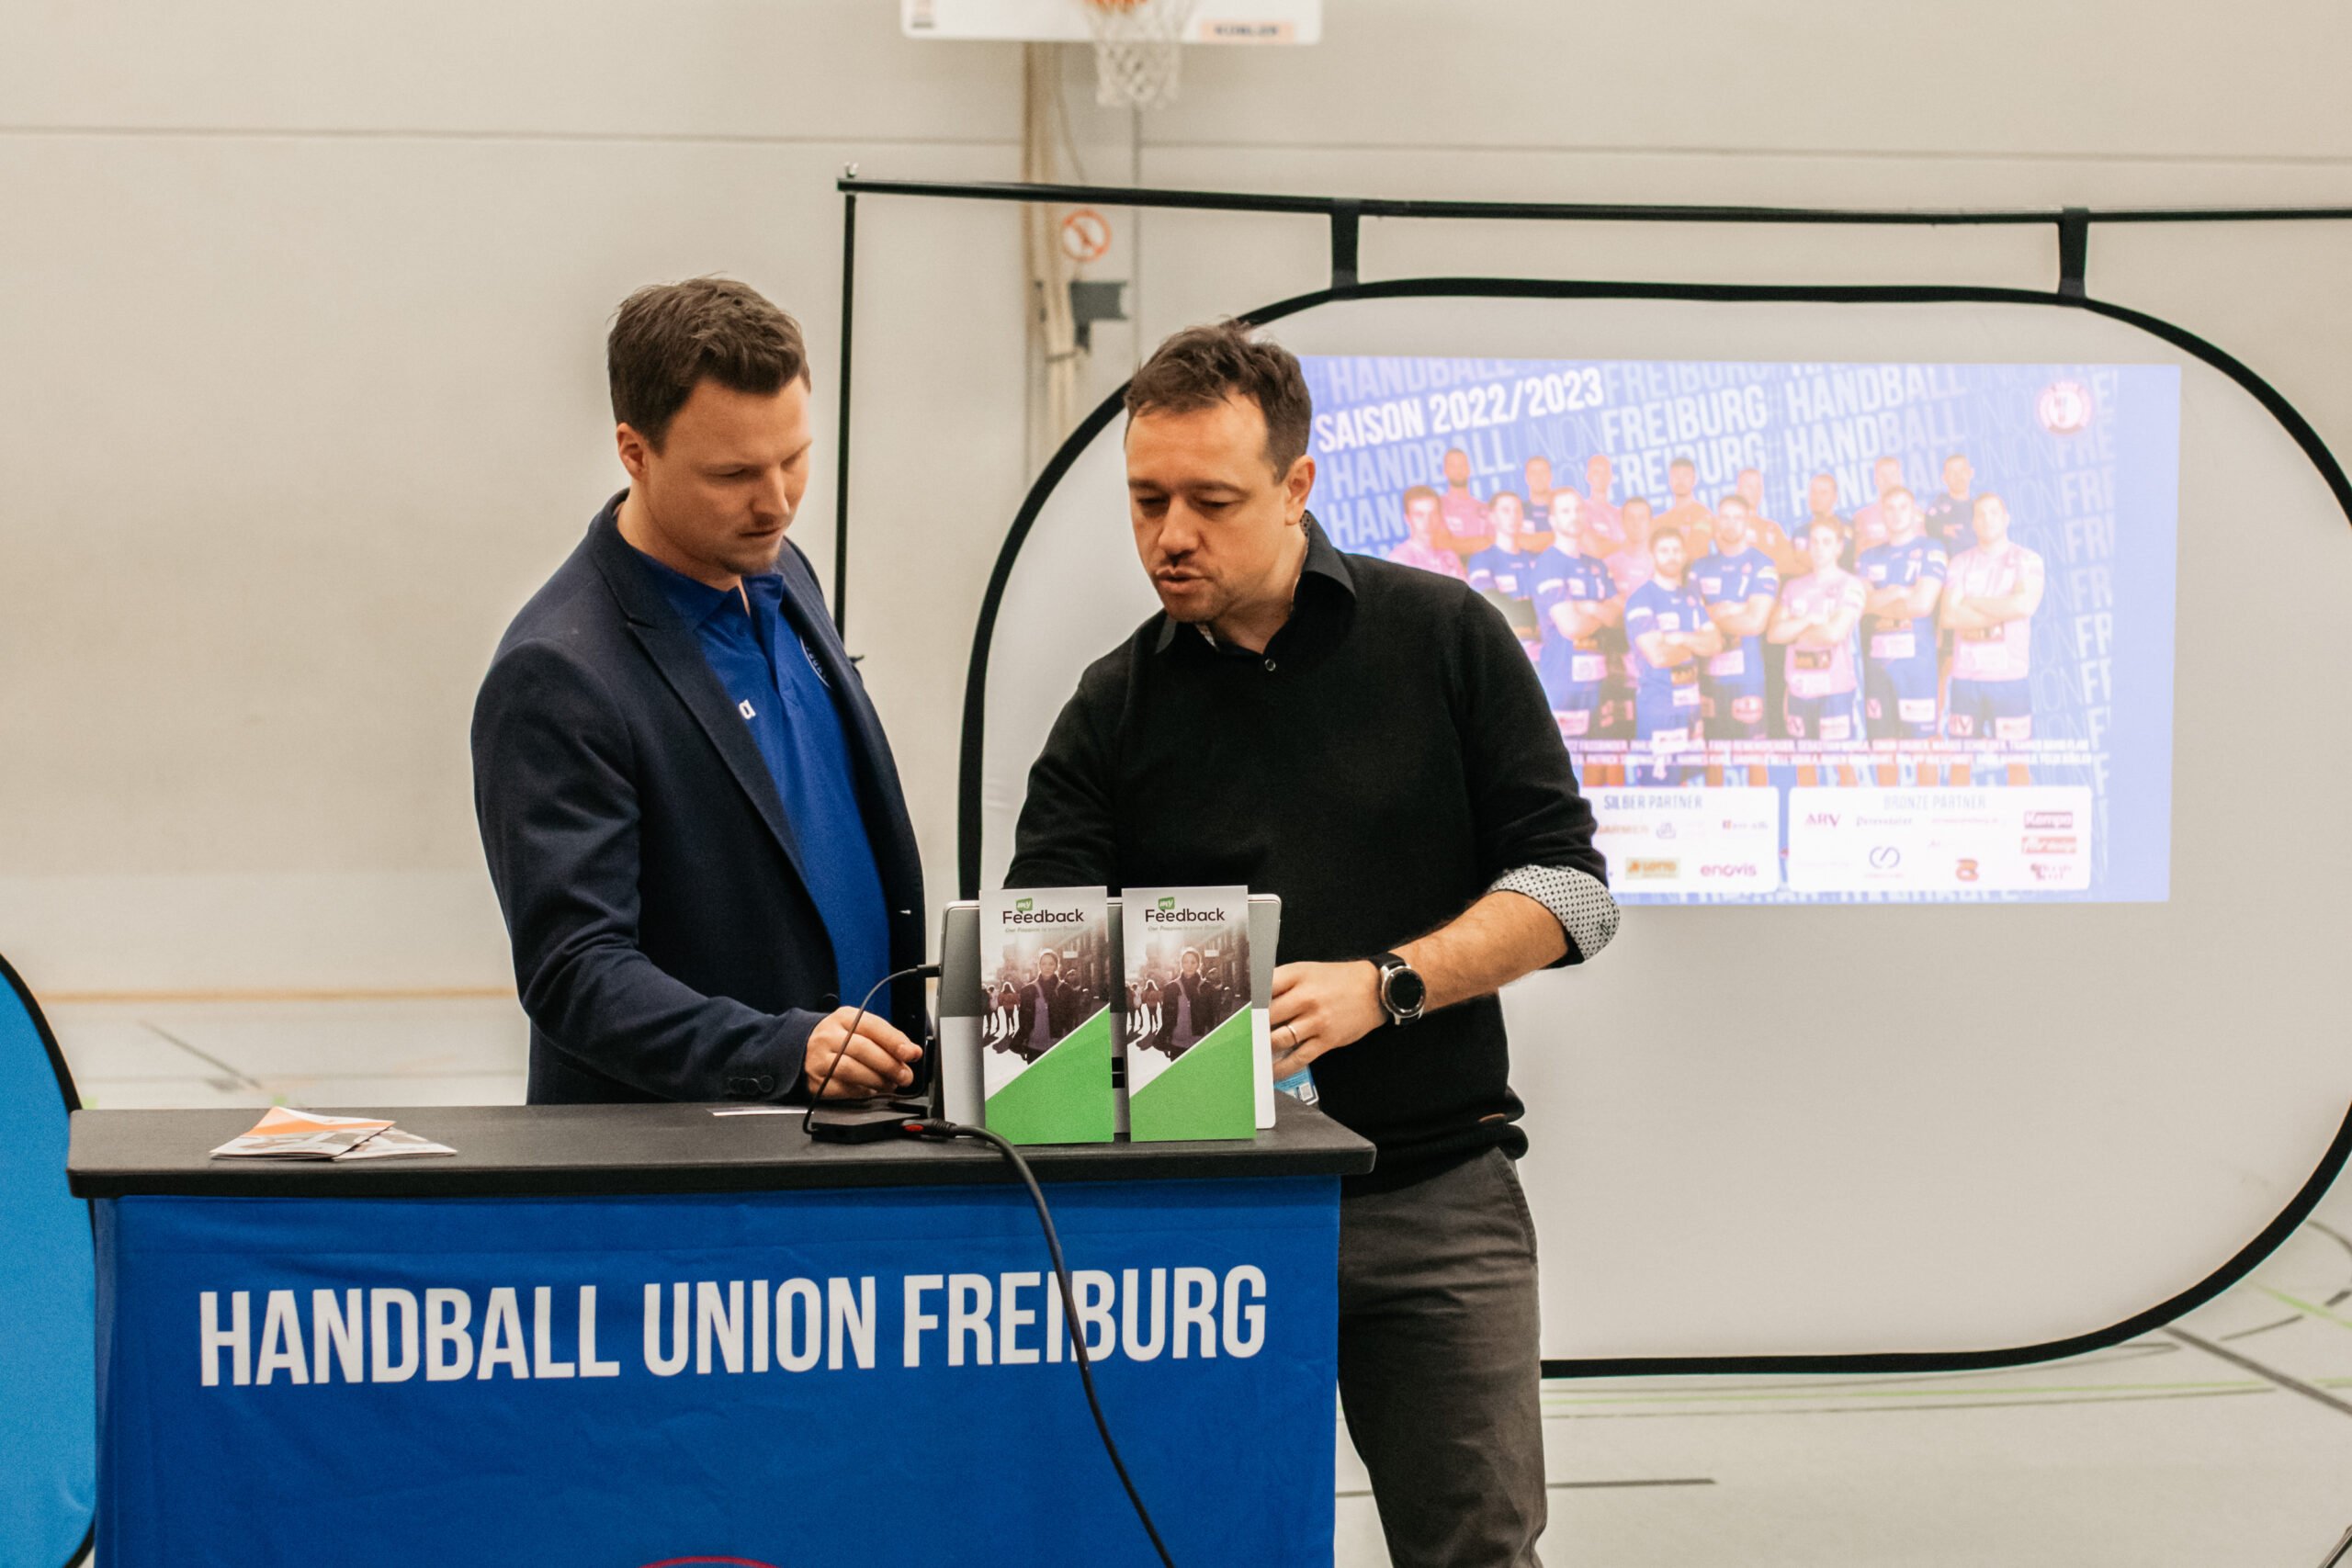 <strong>Pilotprojekt zur digitalen Leistungsoptimierung und Organisation im Handball</strong>